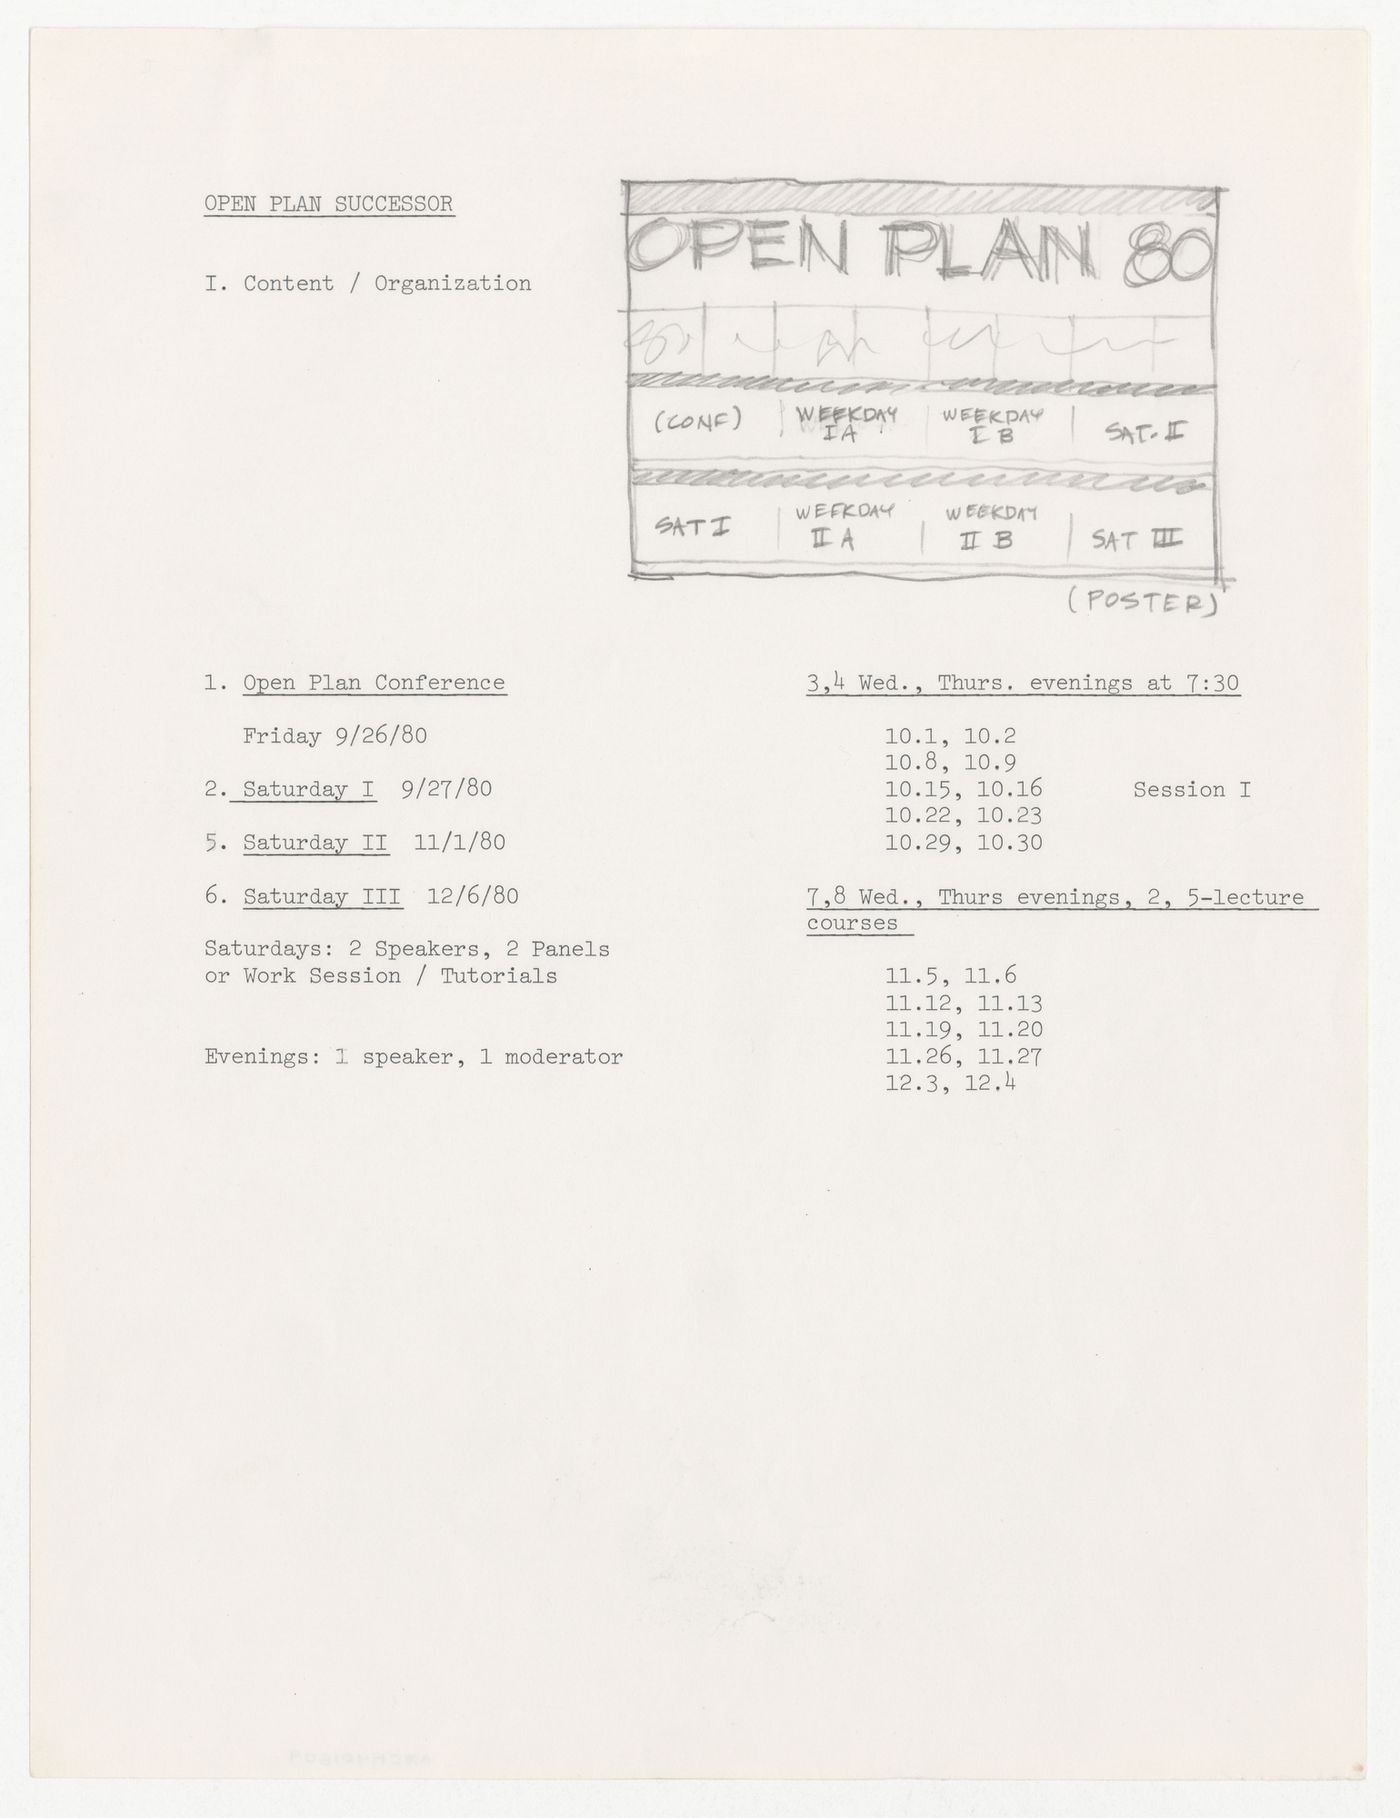 Open Plan successor schedule